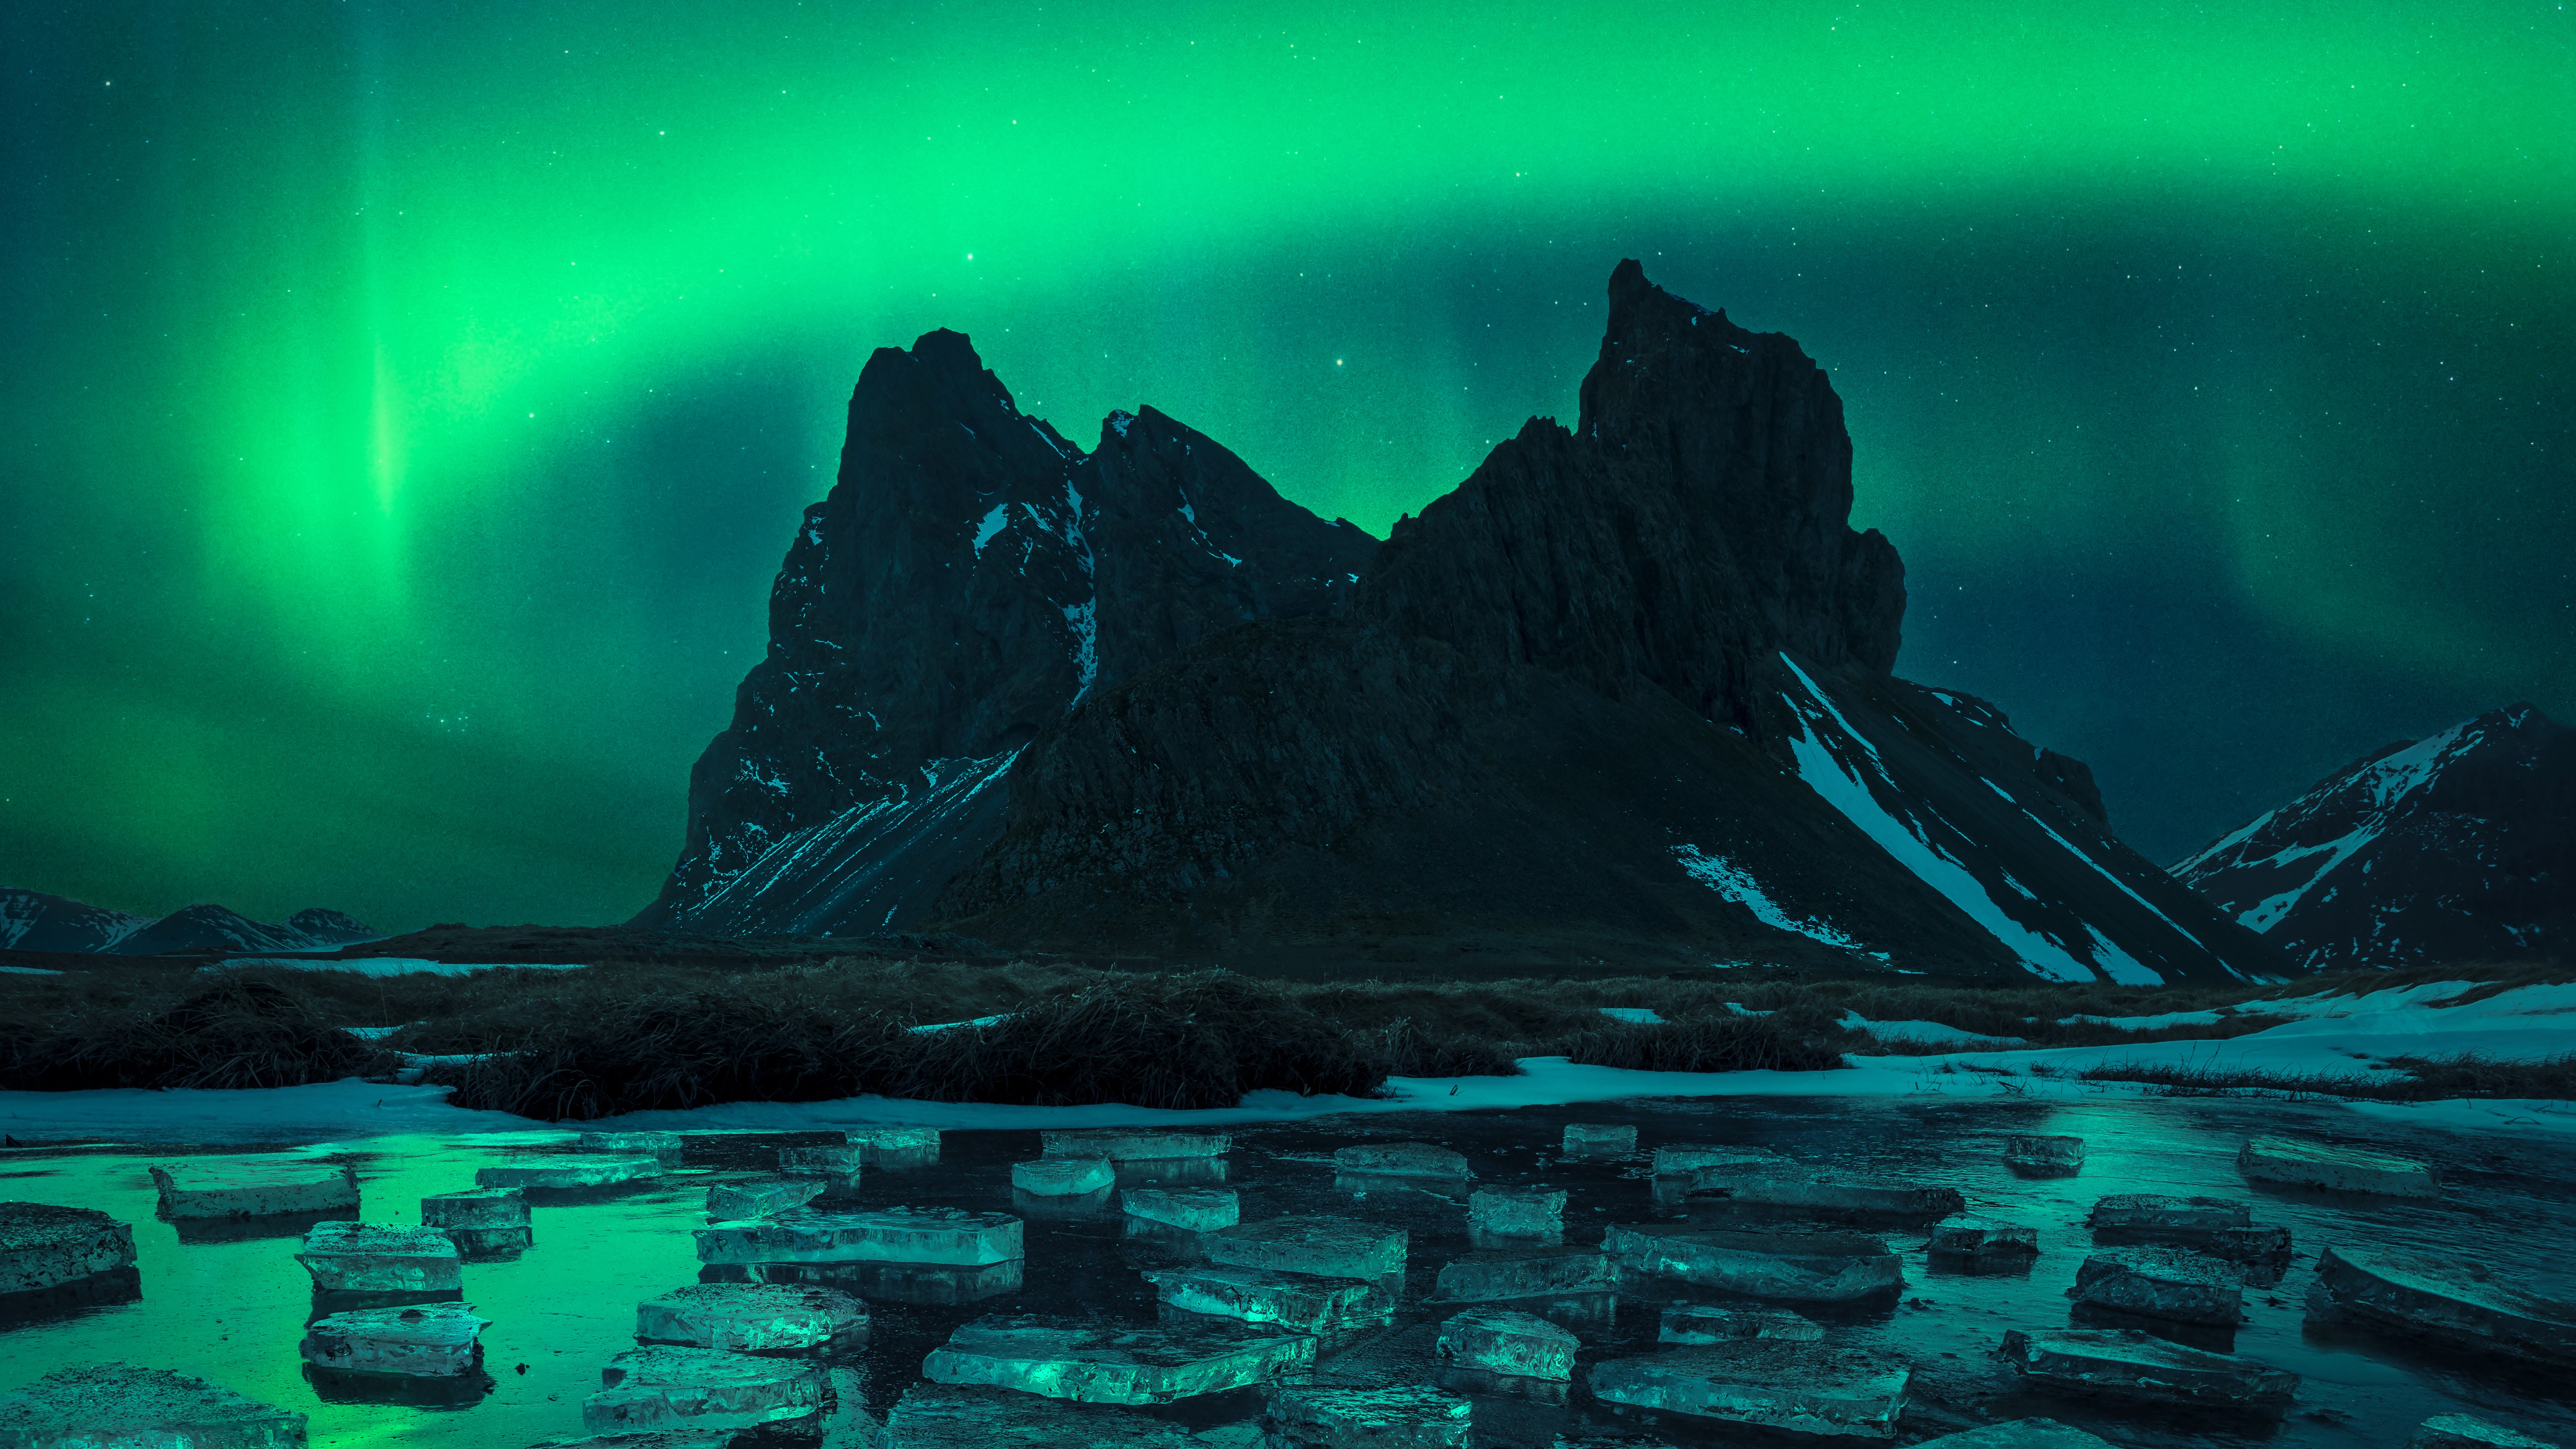 Aurora kategorisinde kazanan fotoğrafta aurora, buzla kaplı bir gölün üzerinde yeşil renkte parlıyor.